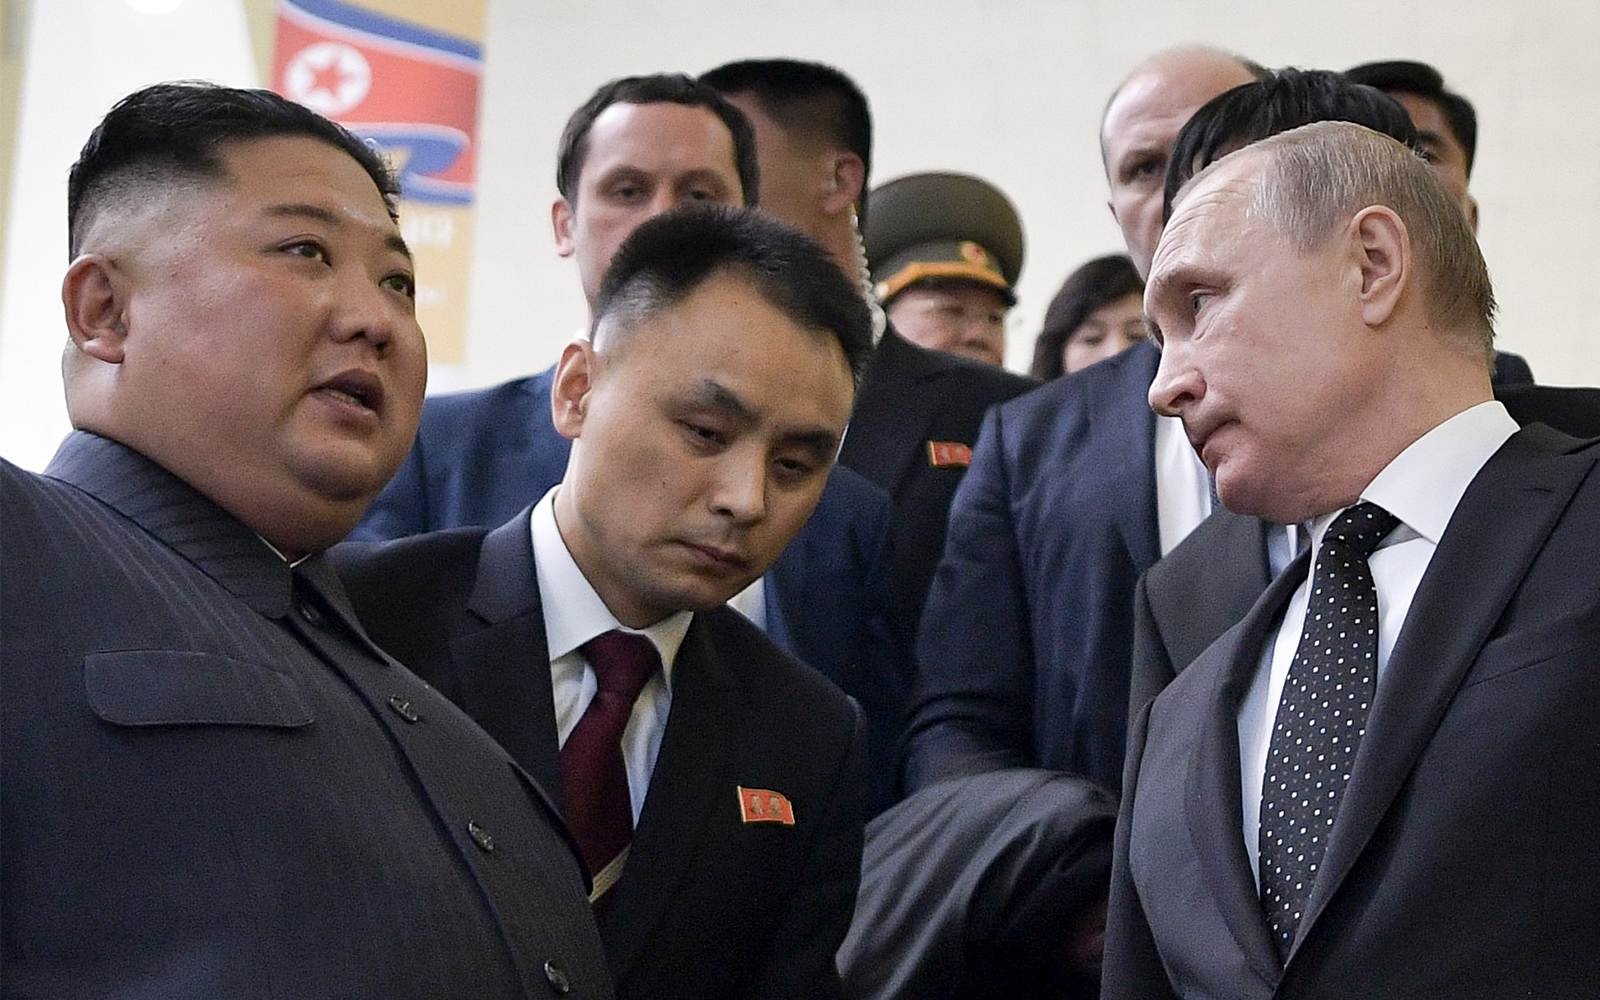 Publikohet mesazhi që Kim Jong Un i dërgoi Vladimir Putinit